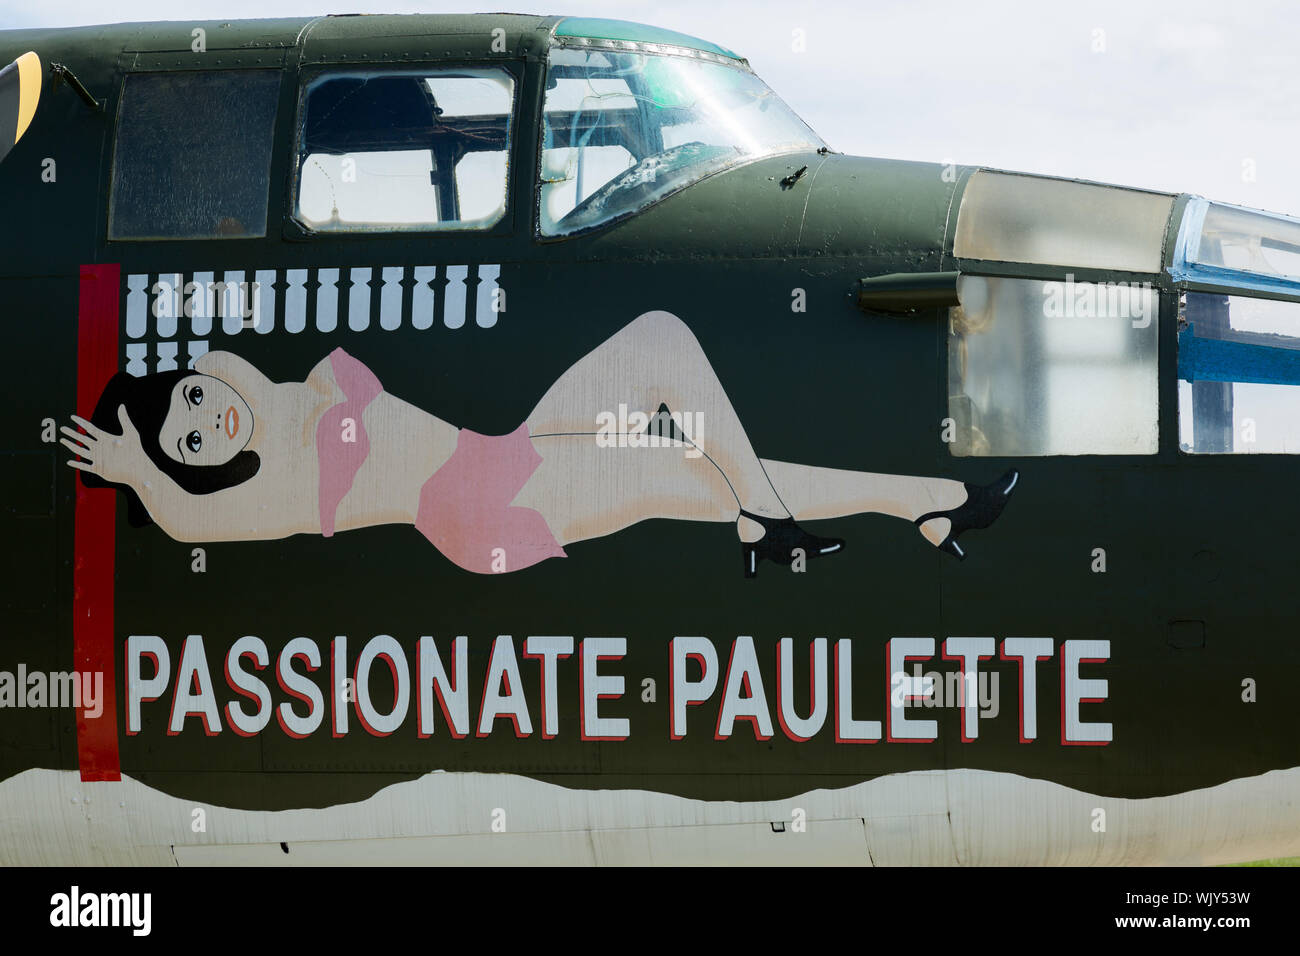 Il B-25 bombardiere da il film 'Catch-22", noto come appassionato Paulette, è in mostra statica al Grissom Air Museum di Bunker Hill, Indiana, Stati Uniti d'America. Foto Stock